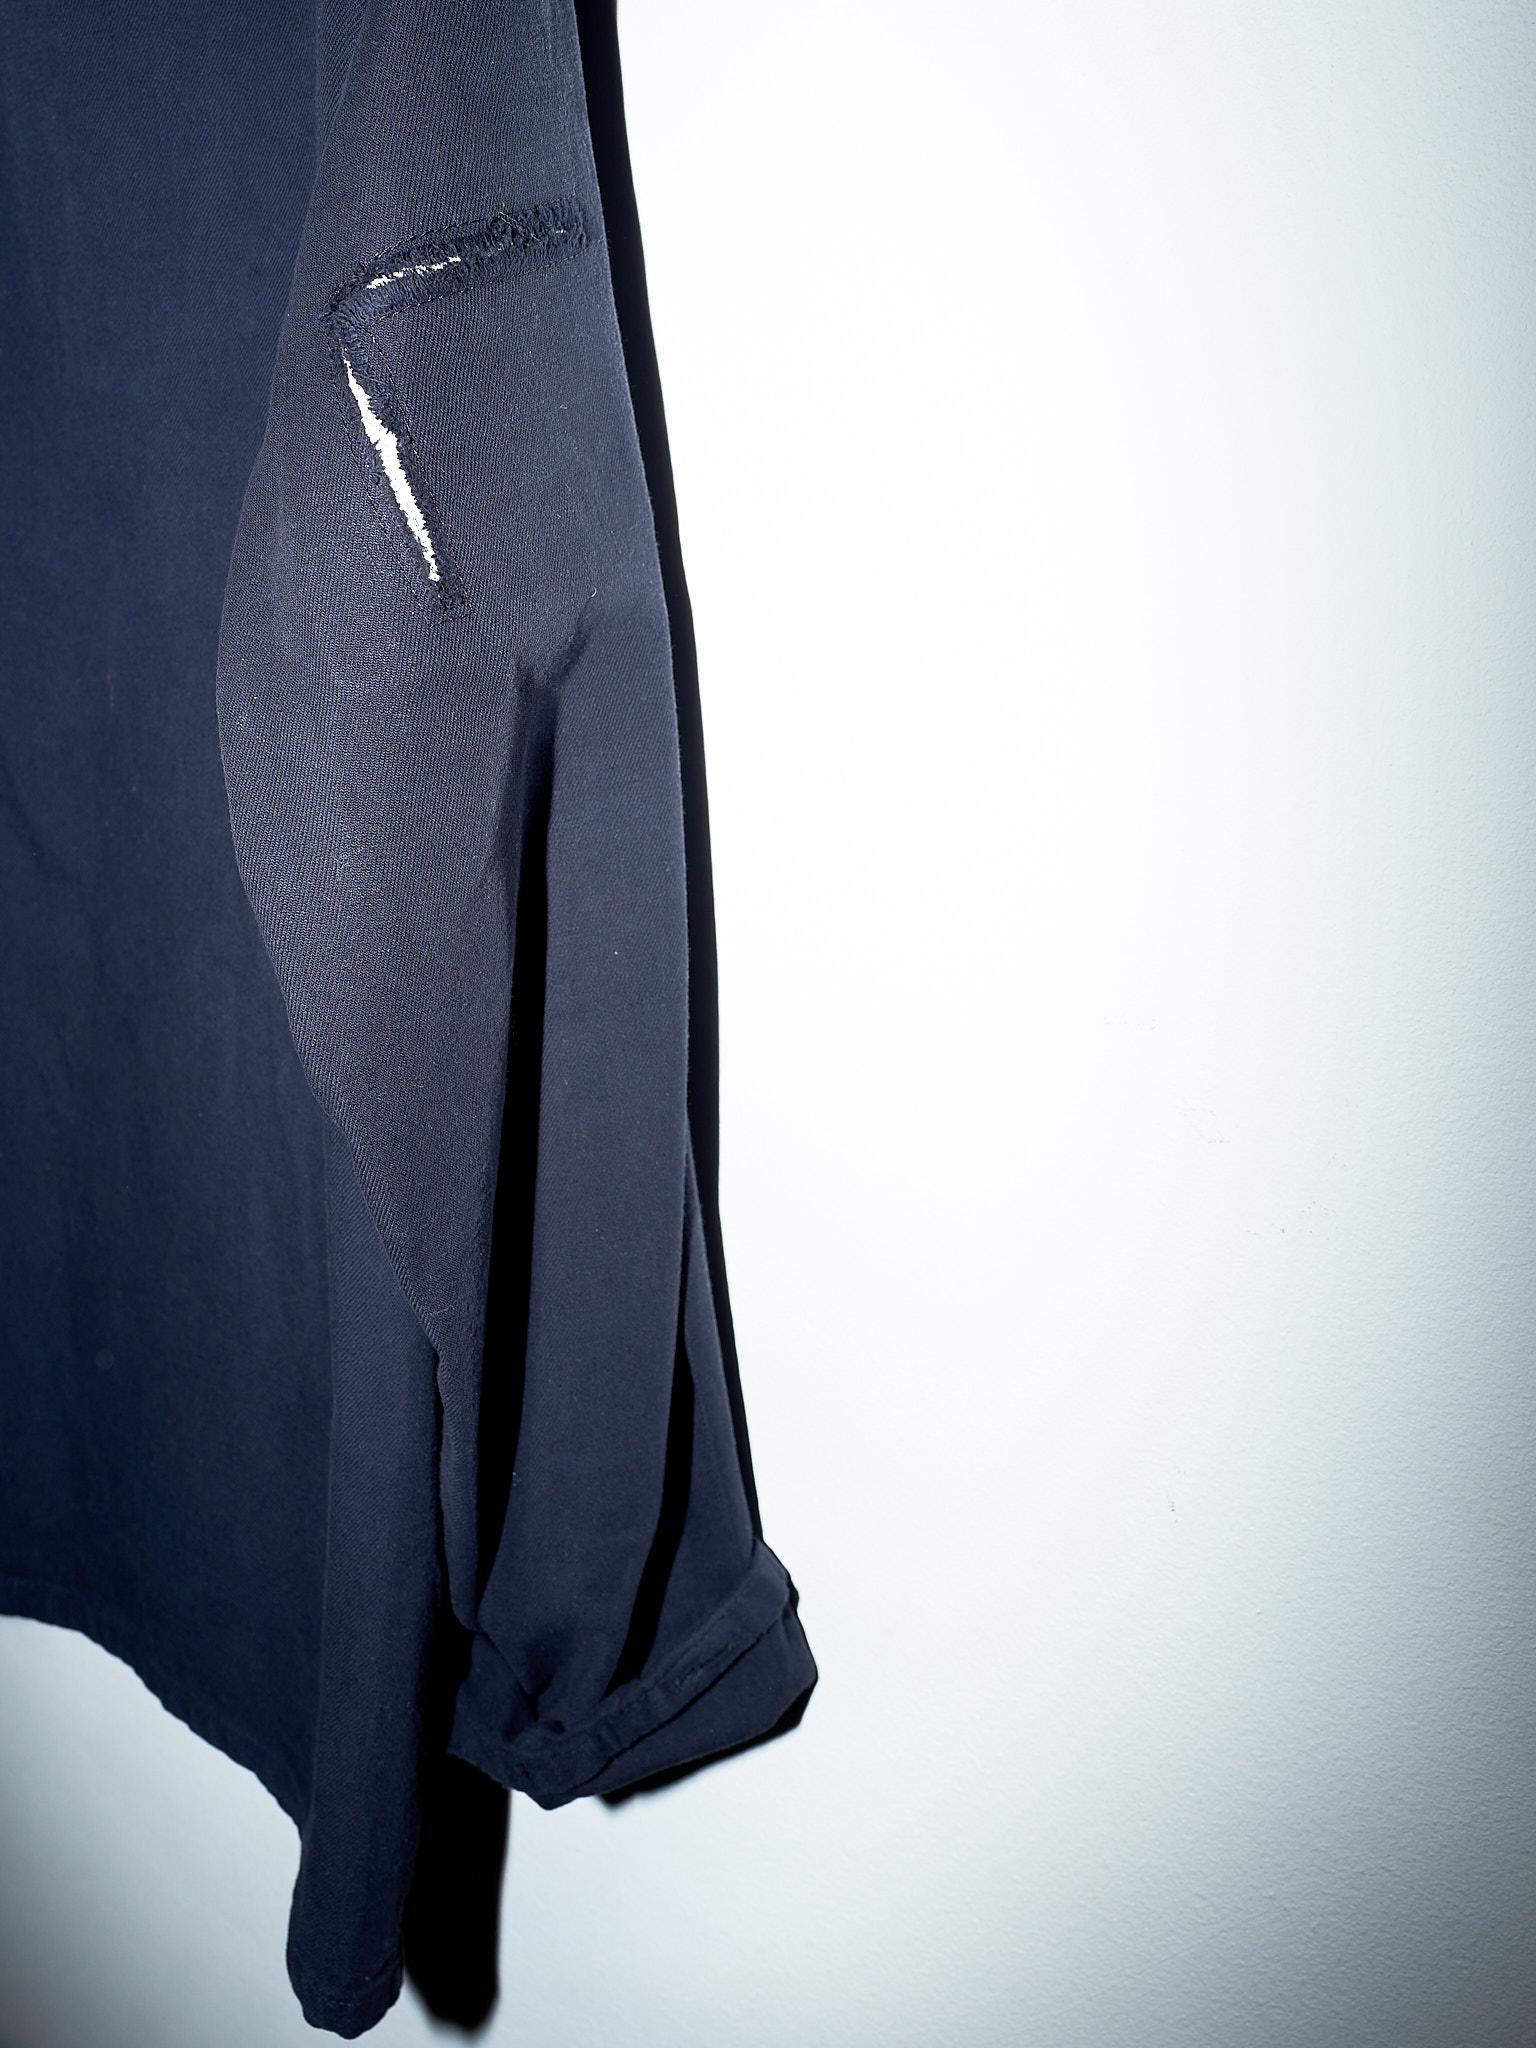 Black Jacket Lurex Tweed Pockets Large Cotton J Dauphin 1